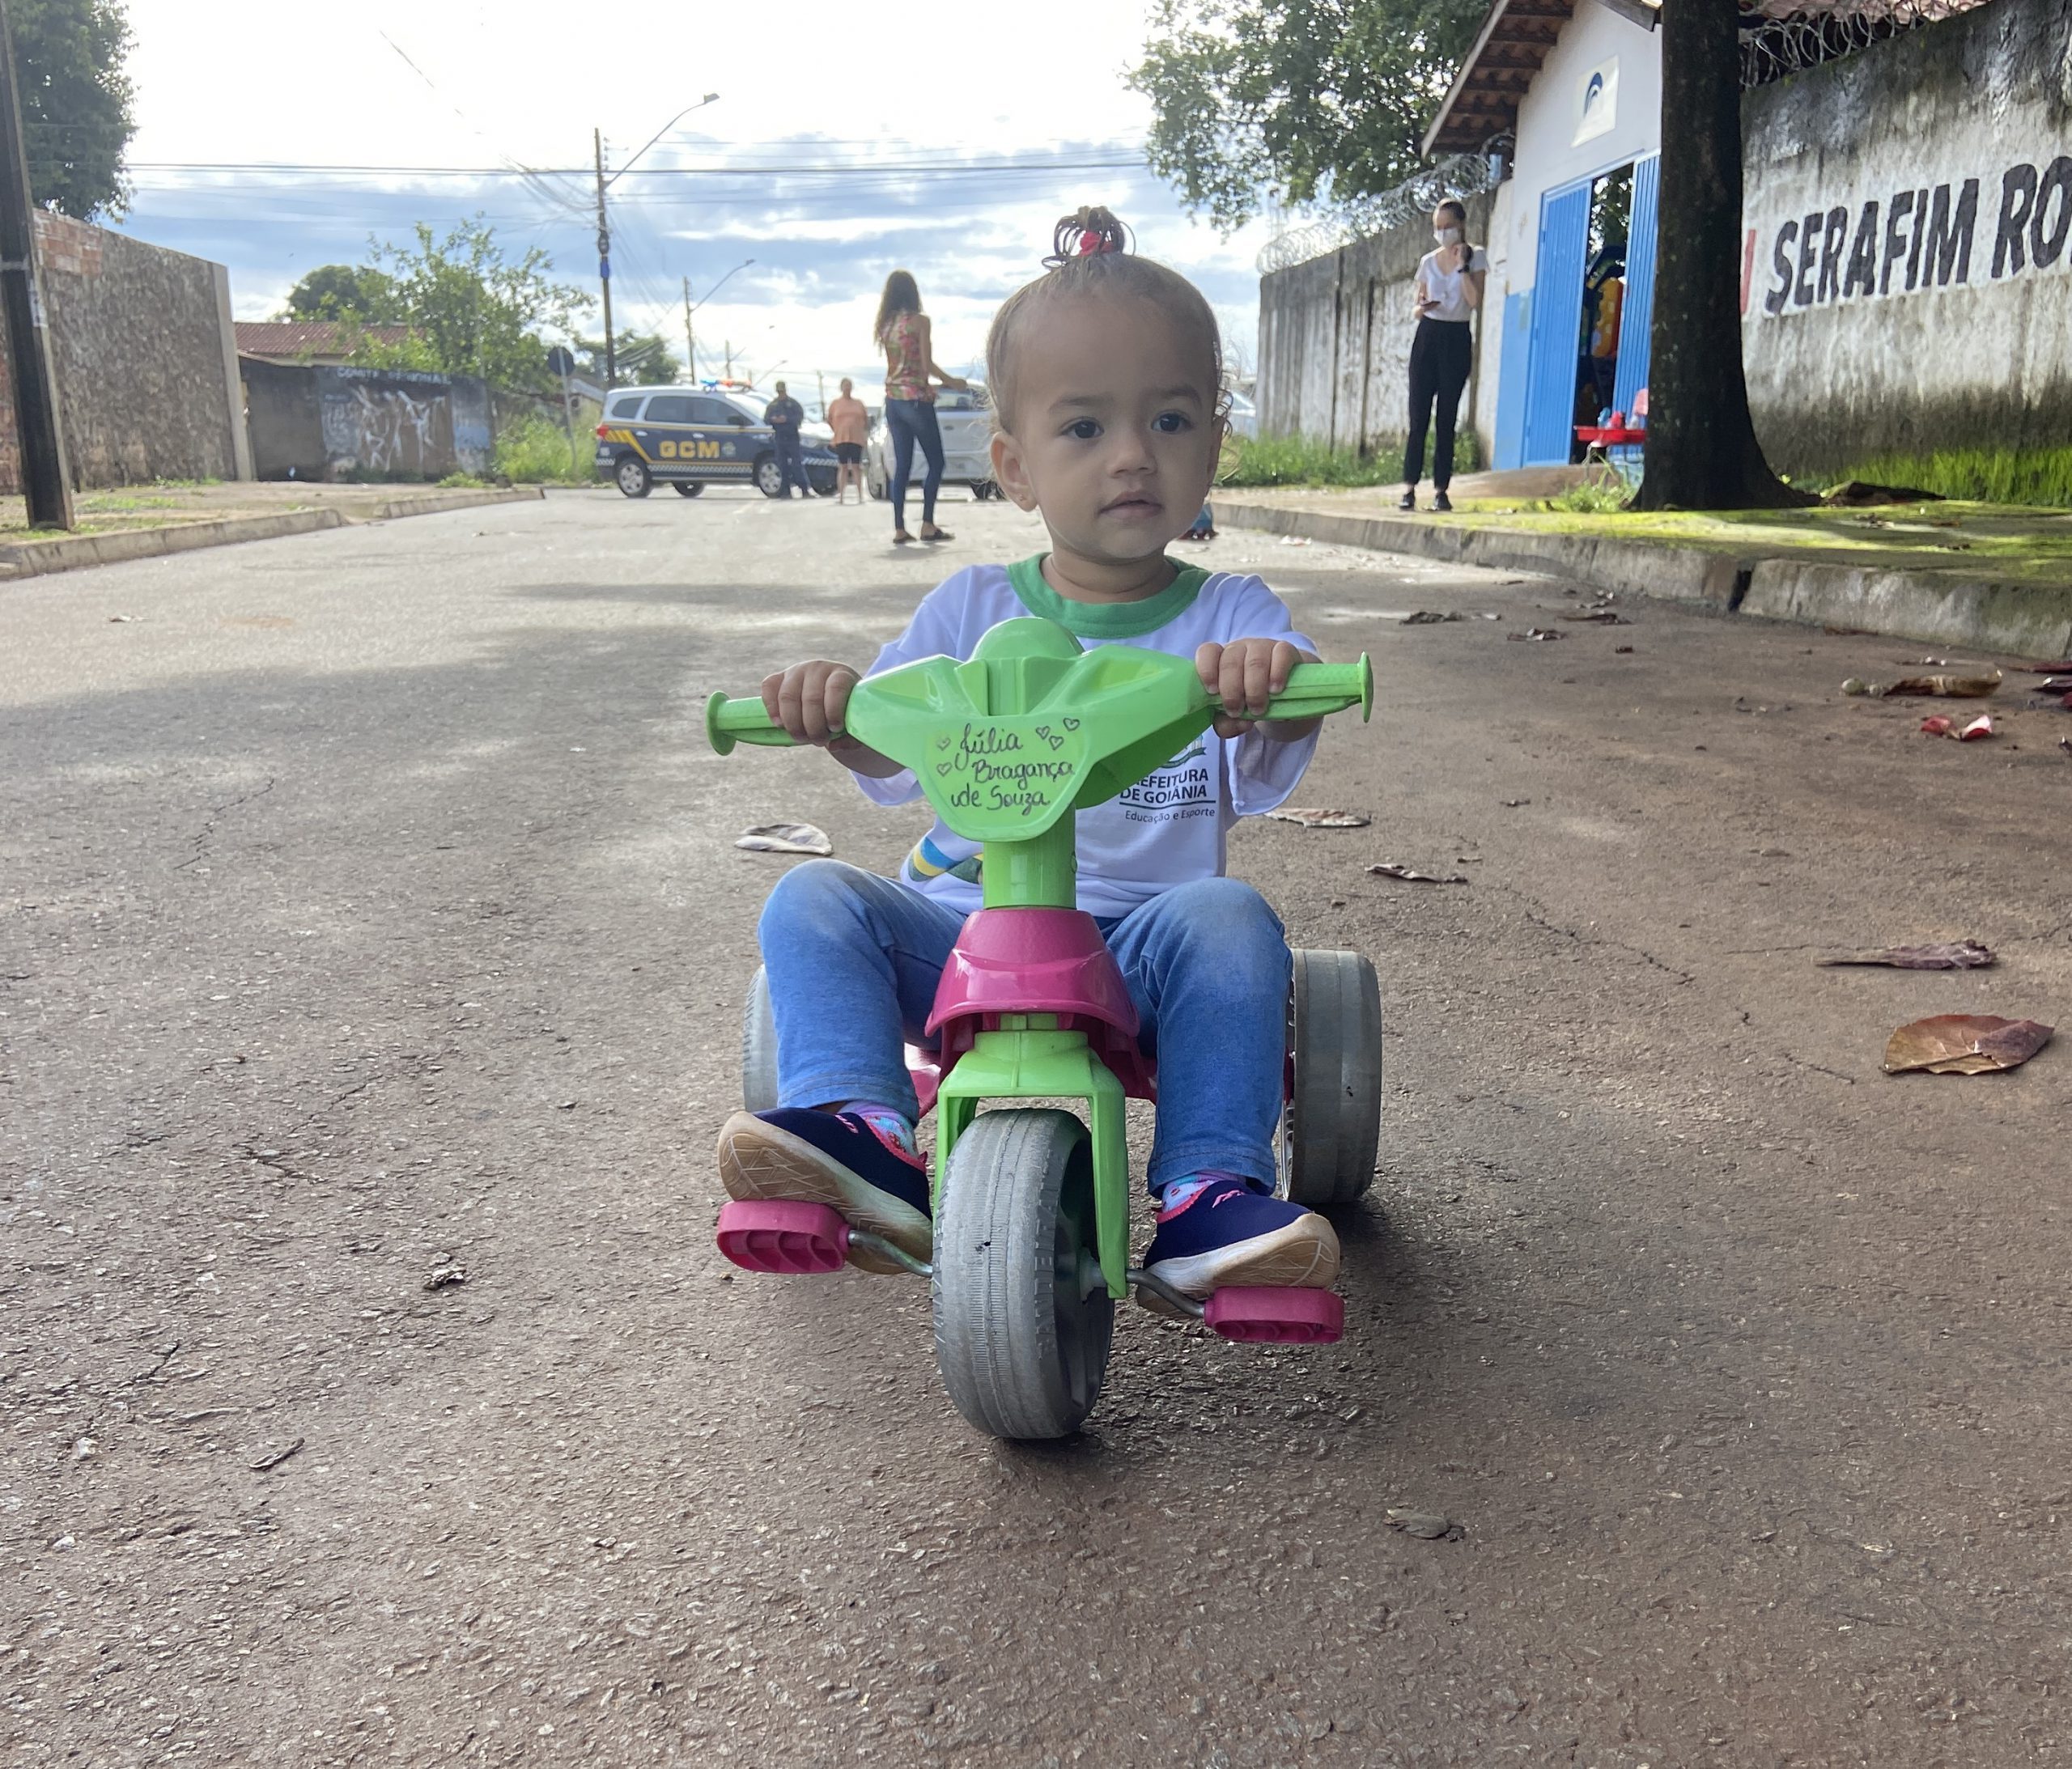 Read more about the article Prática em Rede: A rua também é das crianças!